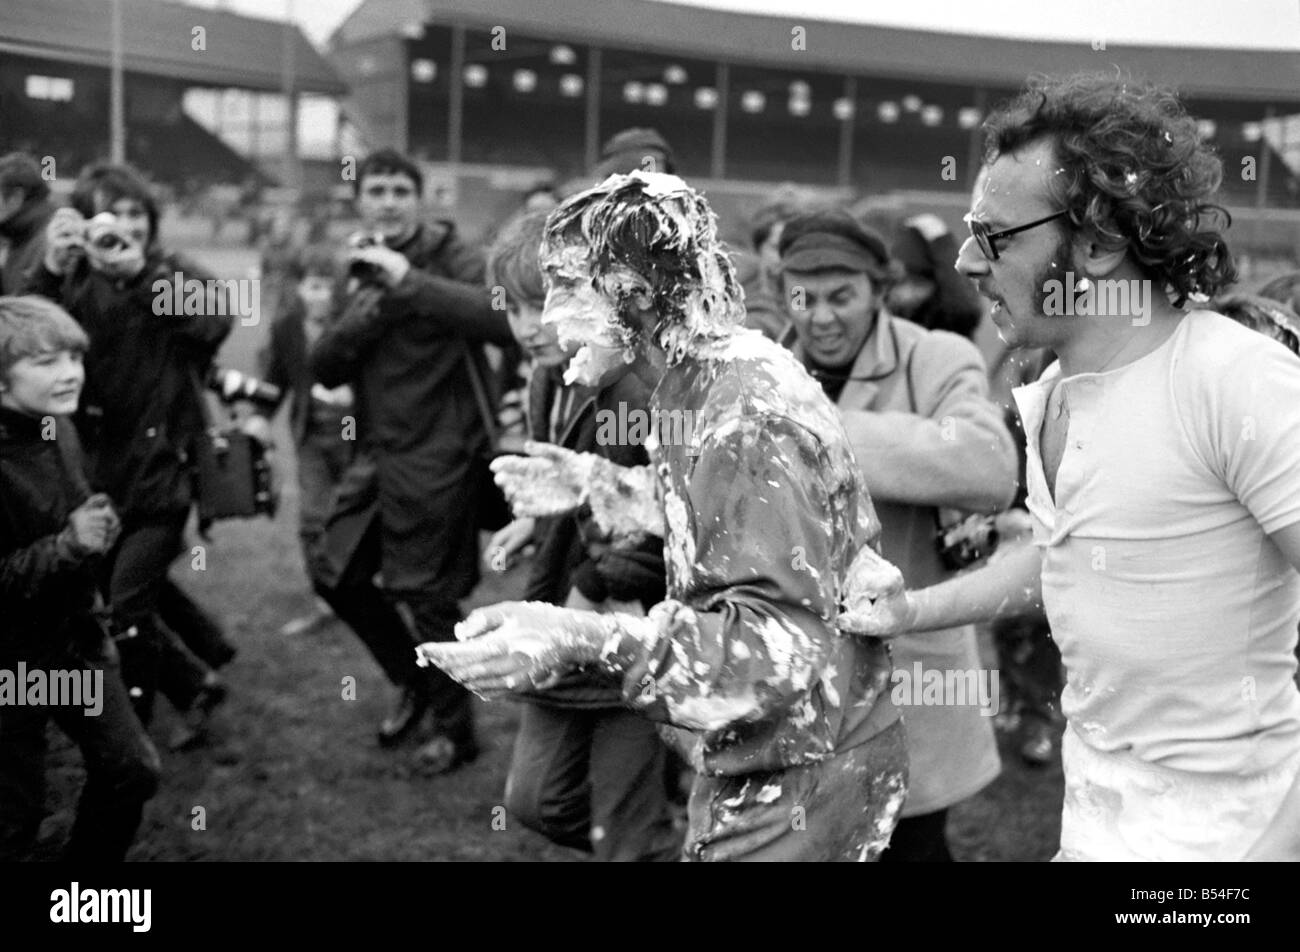 . Les joueurs visés à l'eau savonneuse pendant un match de football de bienfaisance. Novembre 1969 Z11133-002 Banque D'Images